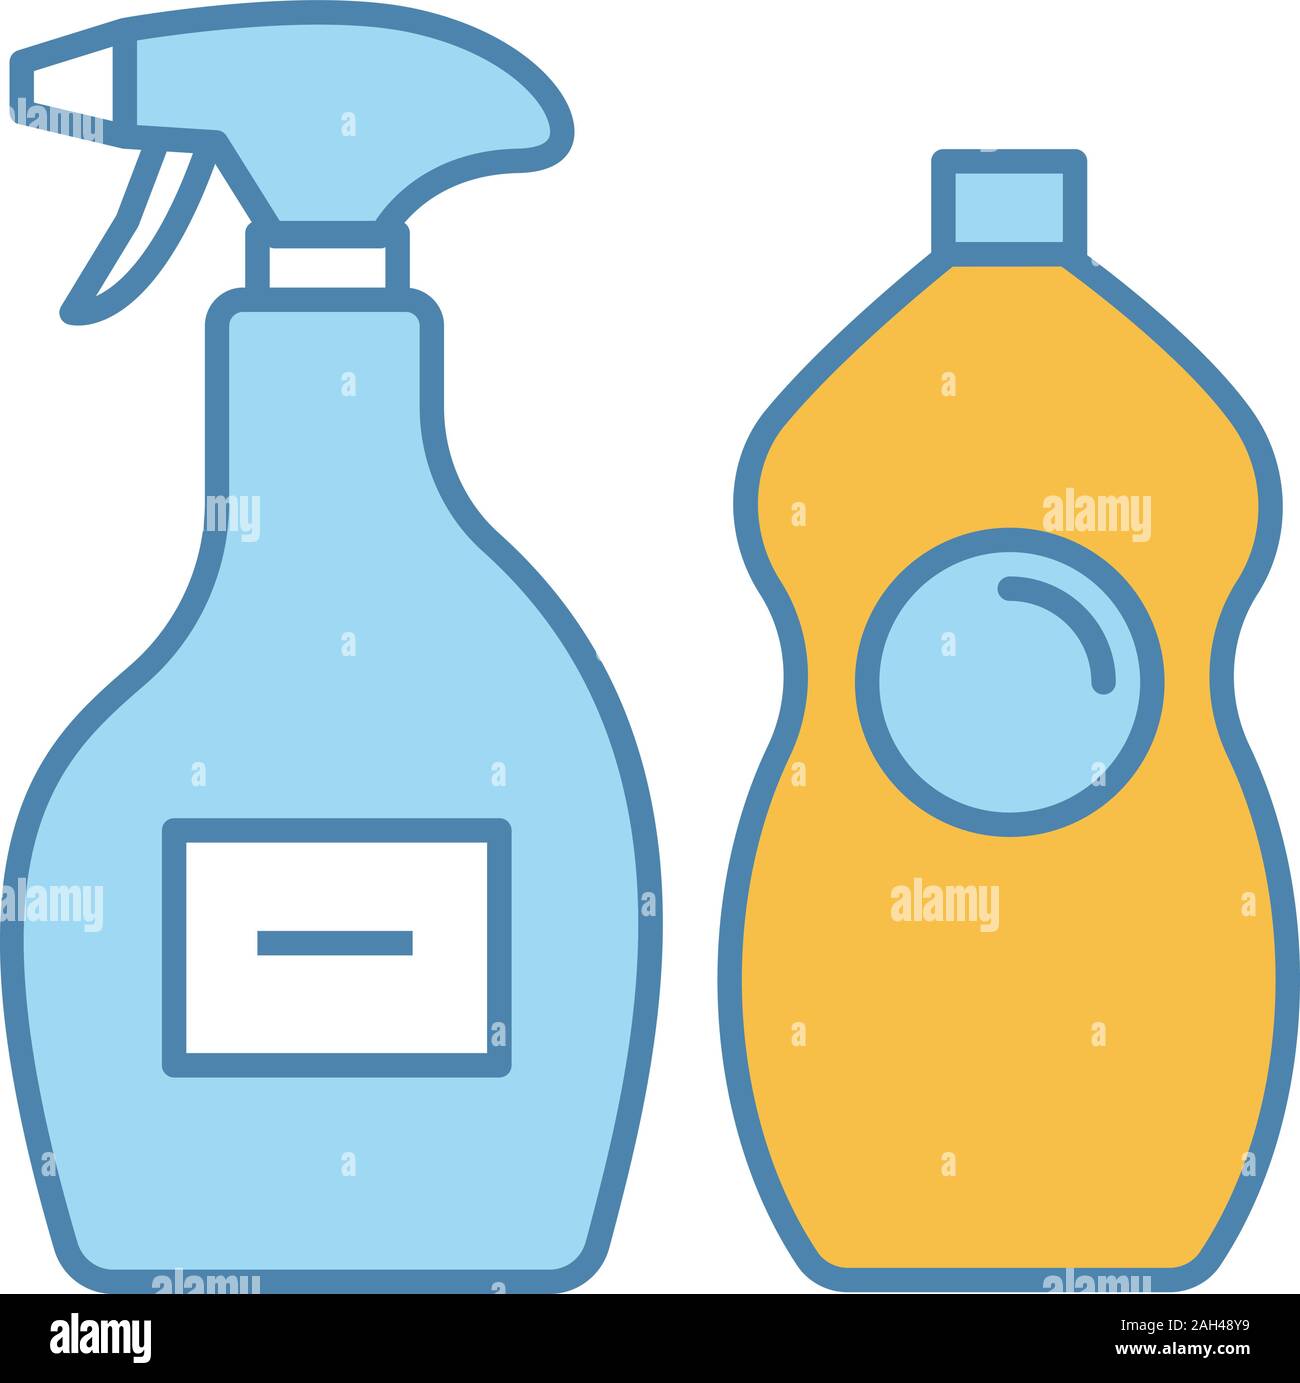 Prodotti chimici di pulizia icona di colore. Detergente per vetri, lavastoviglie liquido. Prodotti per la pulizia di bagno, cucina, wc. Piastrella, vasca-doccia detergente. Ve isolato Illustrazione Vettoriale